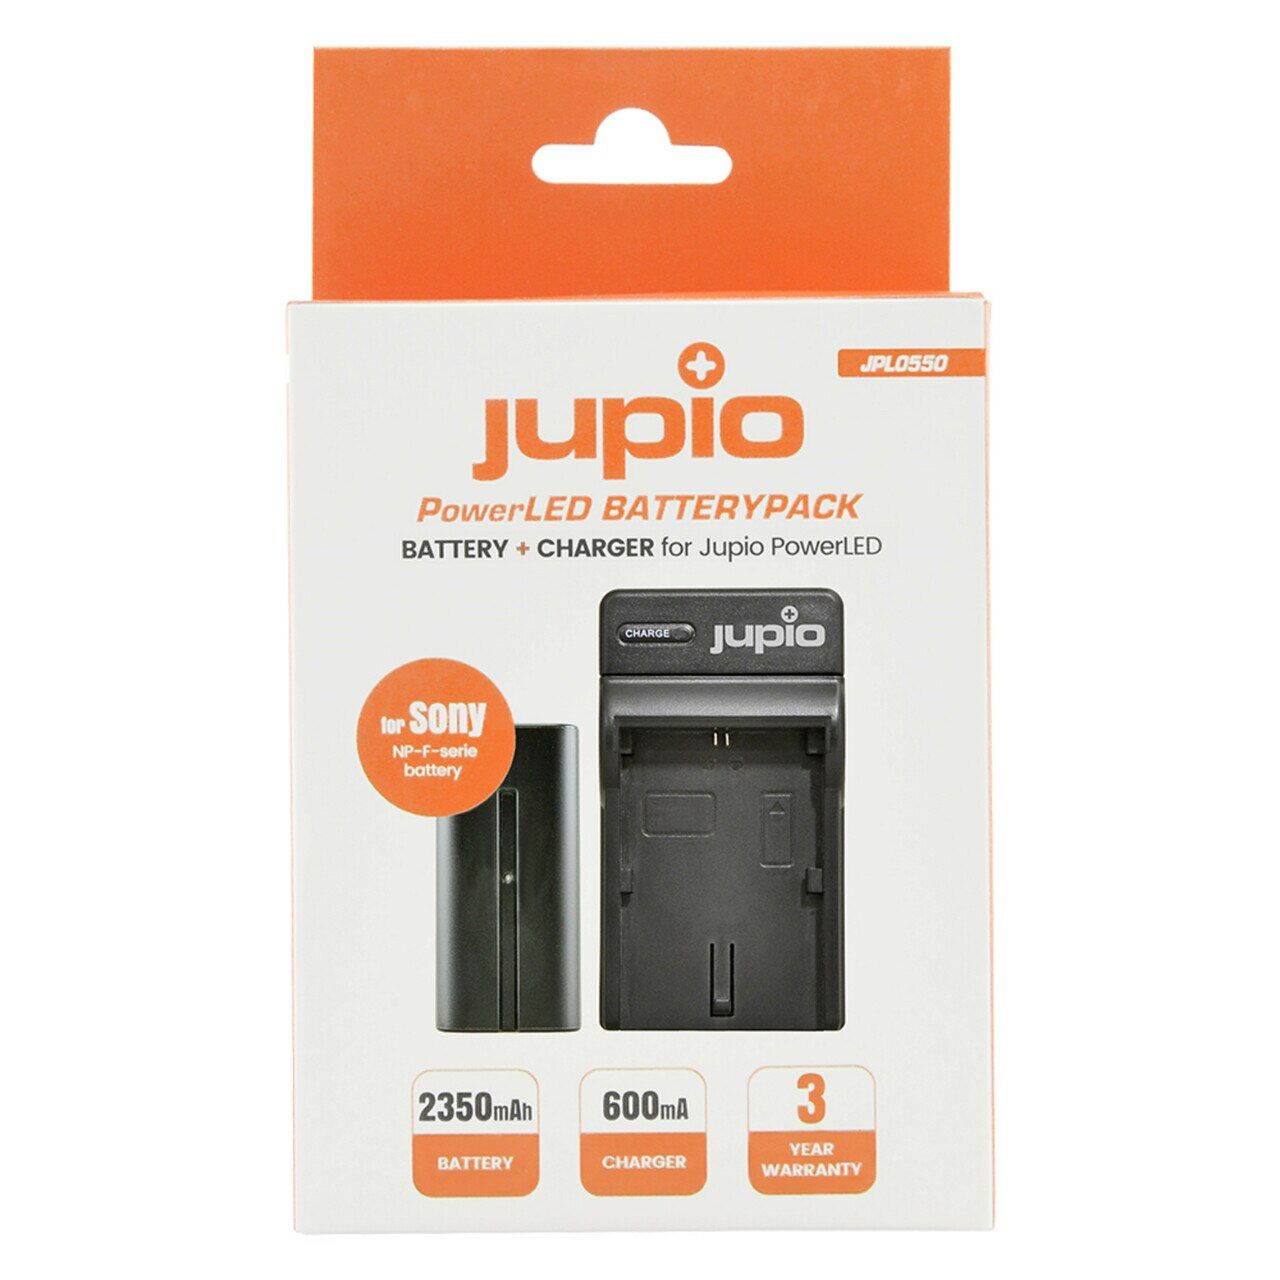 Jupio PowerLED Batterypack